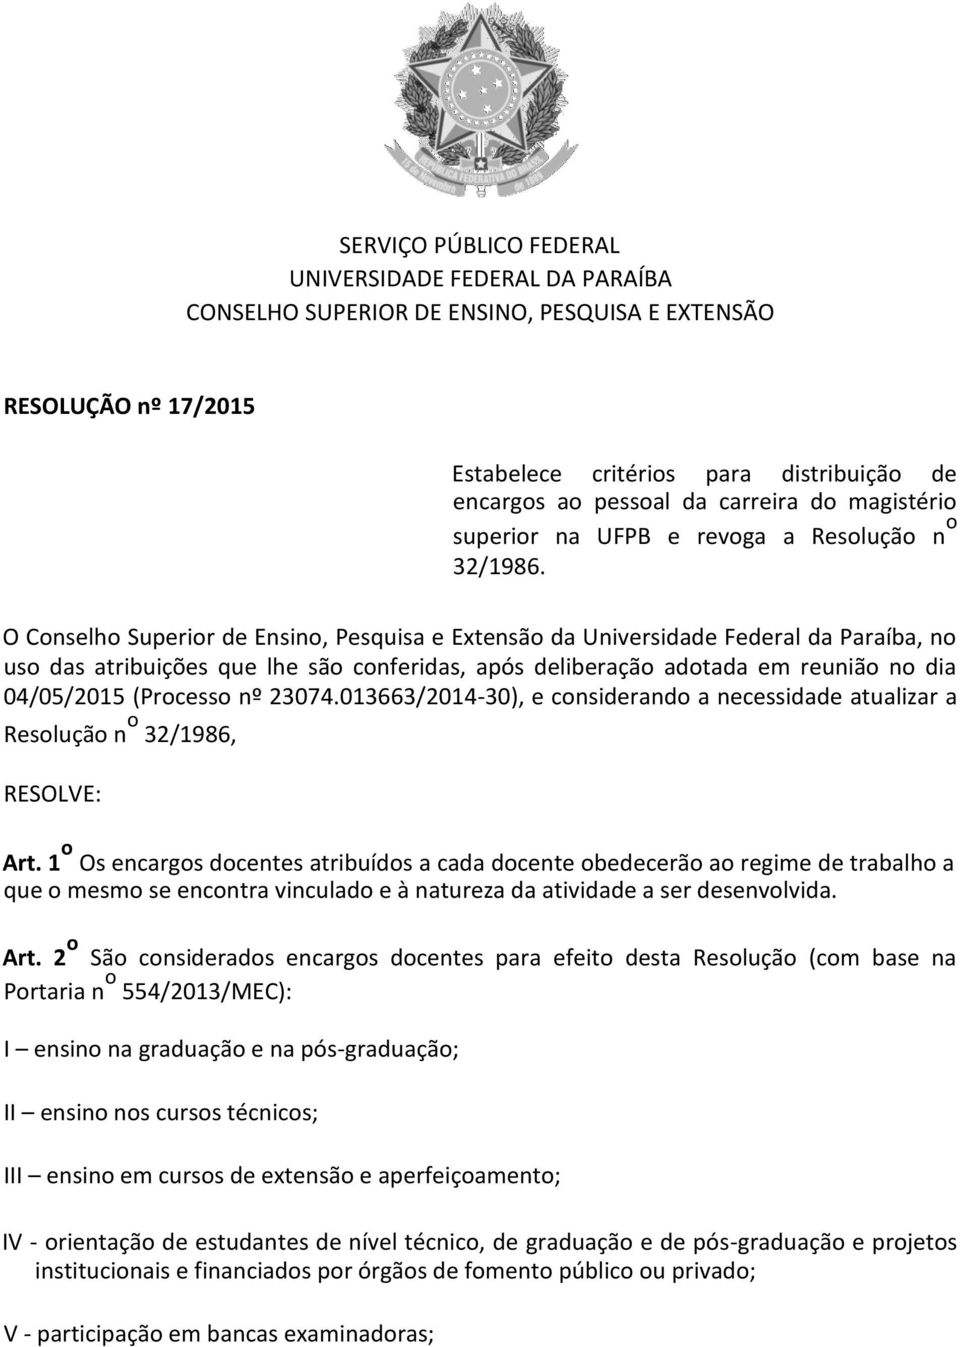 O Conselho Superior de Ensino, Pesquisa e Extensão da Universidade Federal da Paraíba, no uso das atribuições que lhe são conferidas, após deliberação adotada em reunião no dia 04/05/2015 (Processo